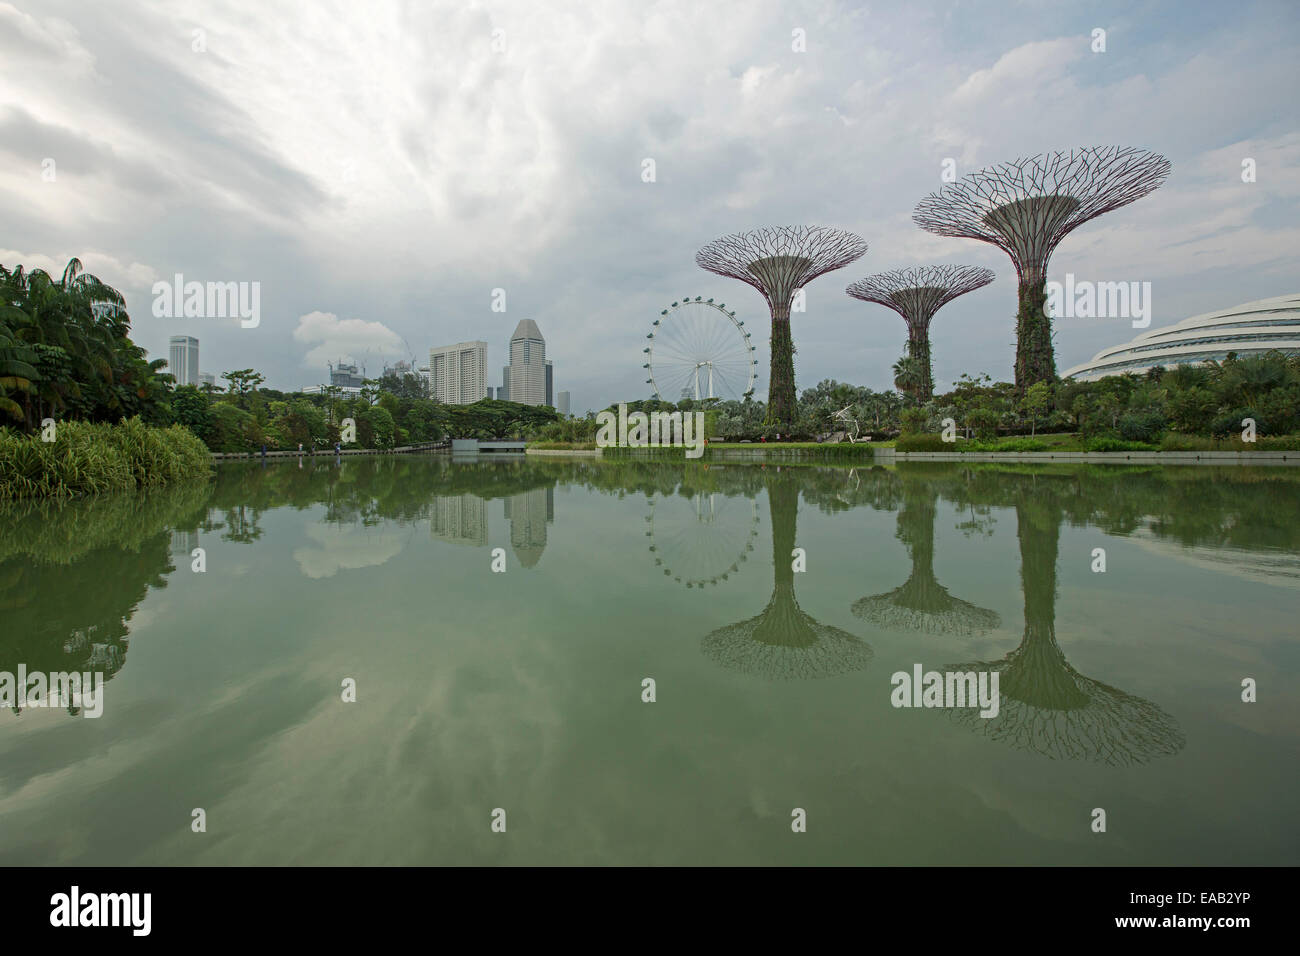 Les arbres artificiels uniques, city skyscrapers & roue d'observation reflétée dans les eaux calmes du lac dans les jardins de la baie à Singapour Banque D'Images